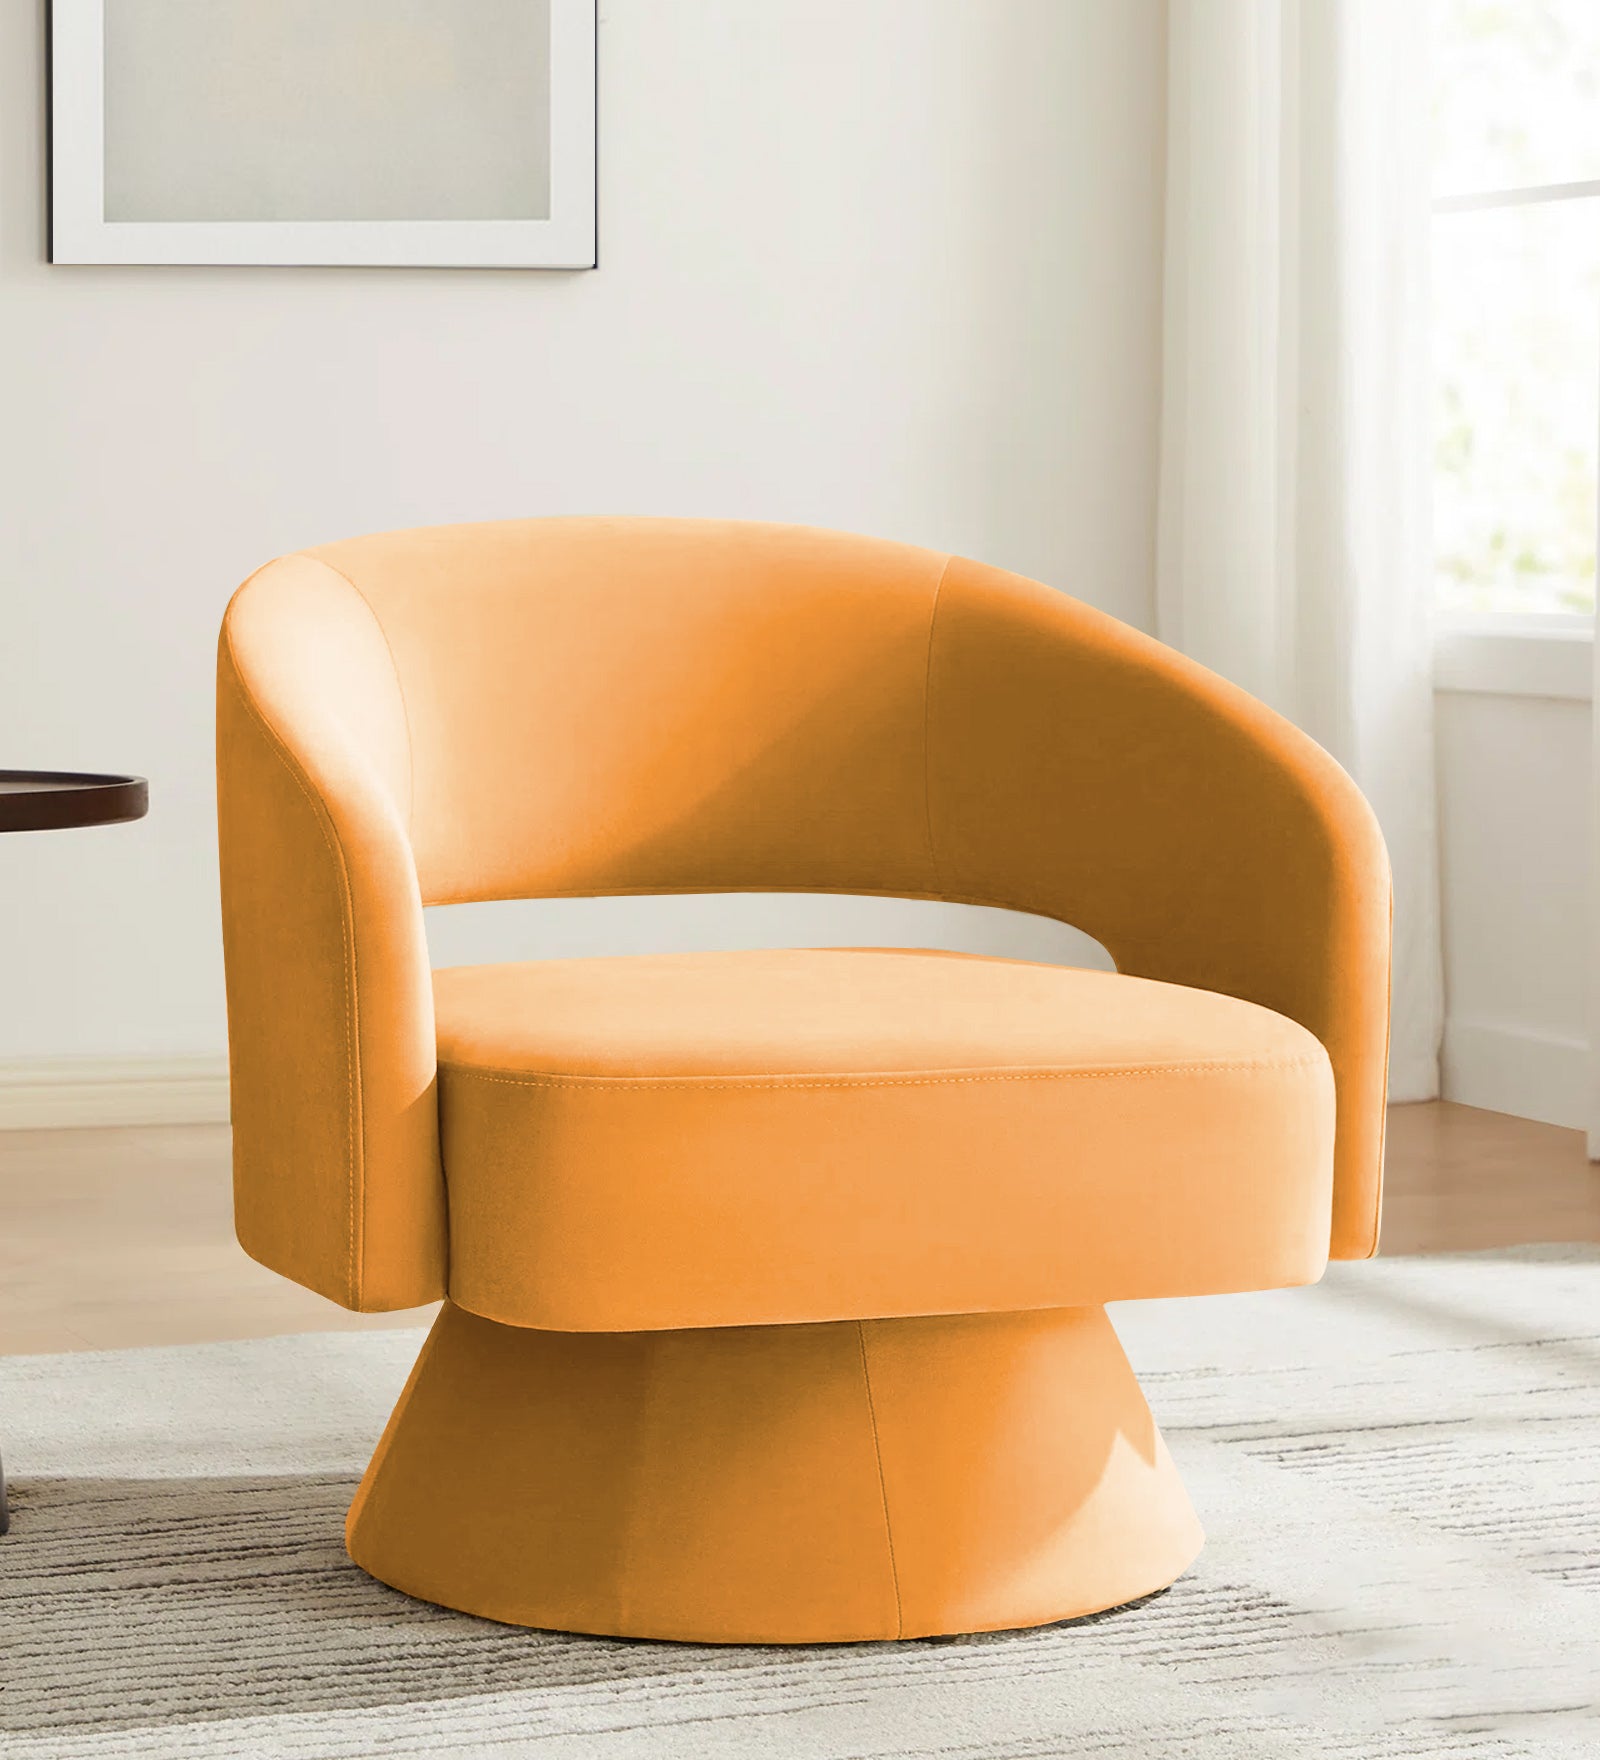 Pendra Velvet Swivel Chair in Tangerine Orange Colour